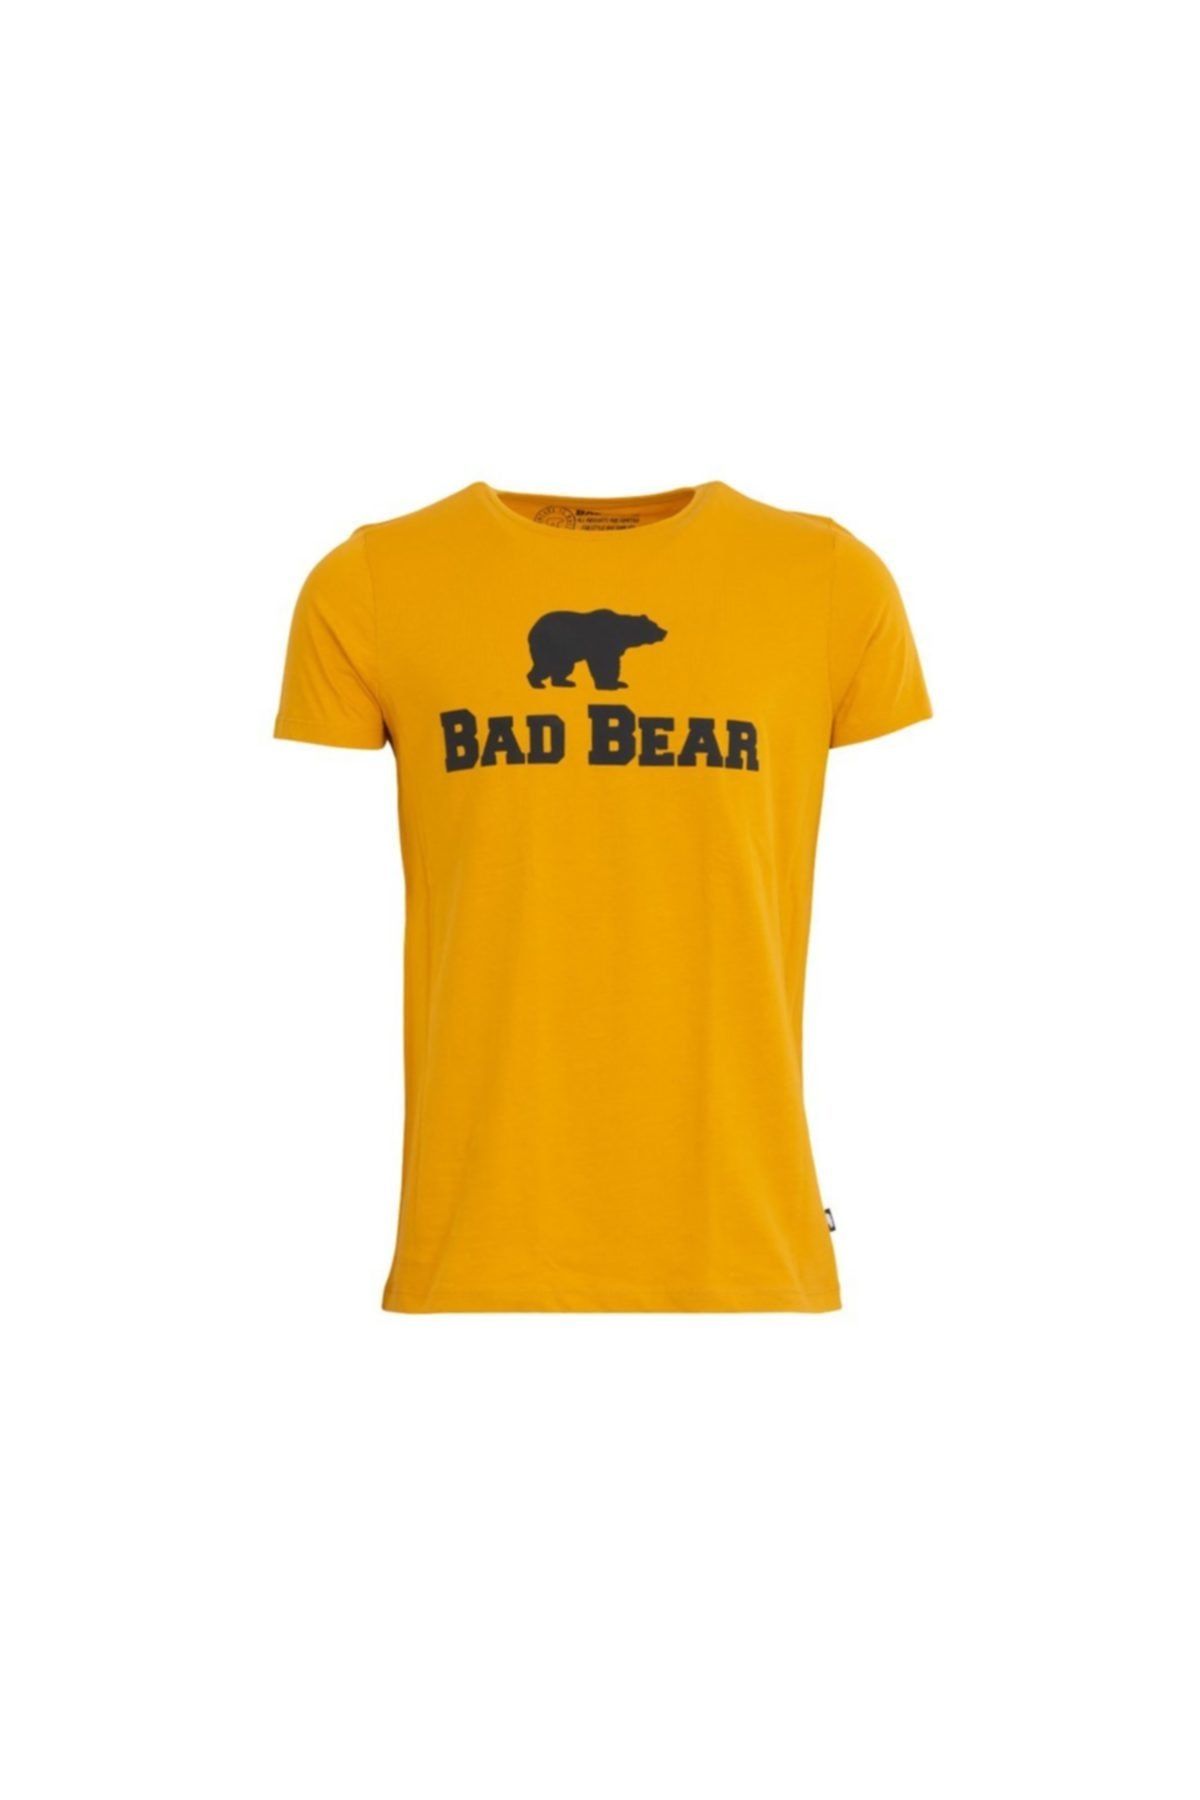 Bad Bear 19.01.07.002 Erkek T-shırt  Hardal